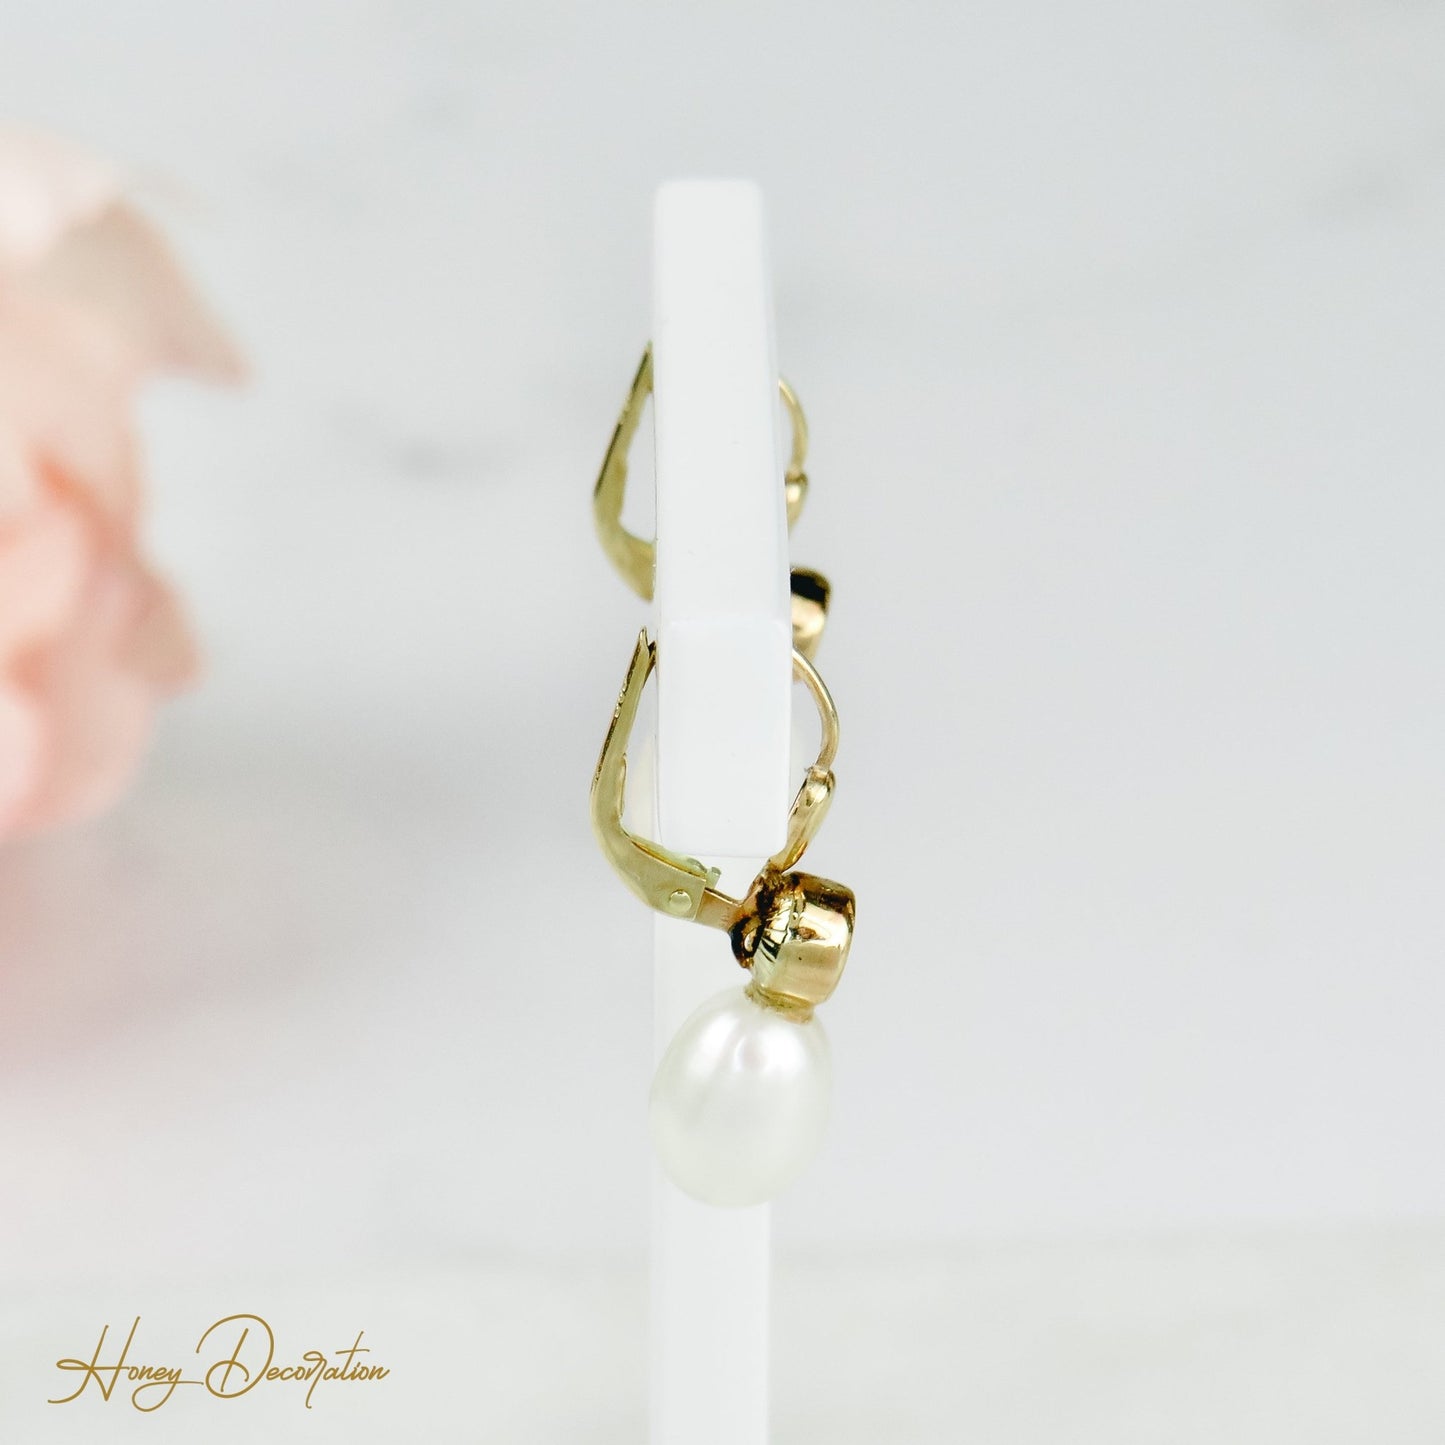 Edle Perlenohrringe mit Diamanten - Honey Decoration